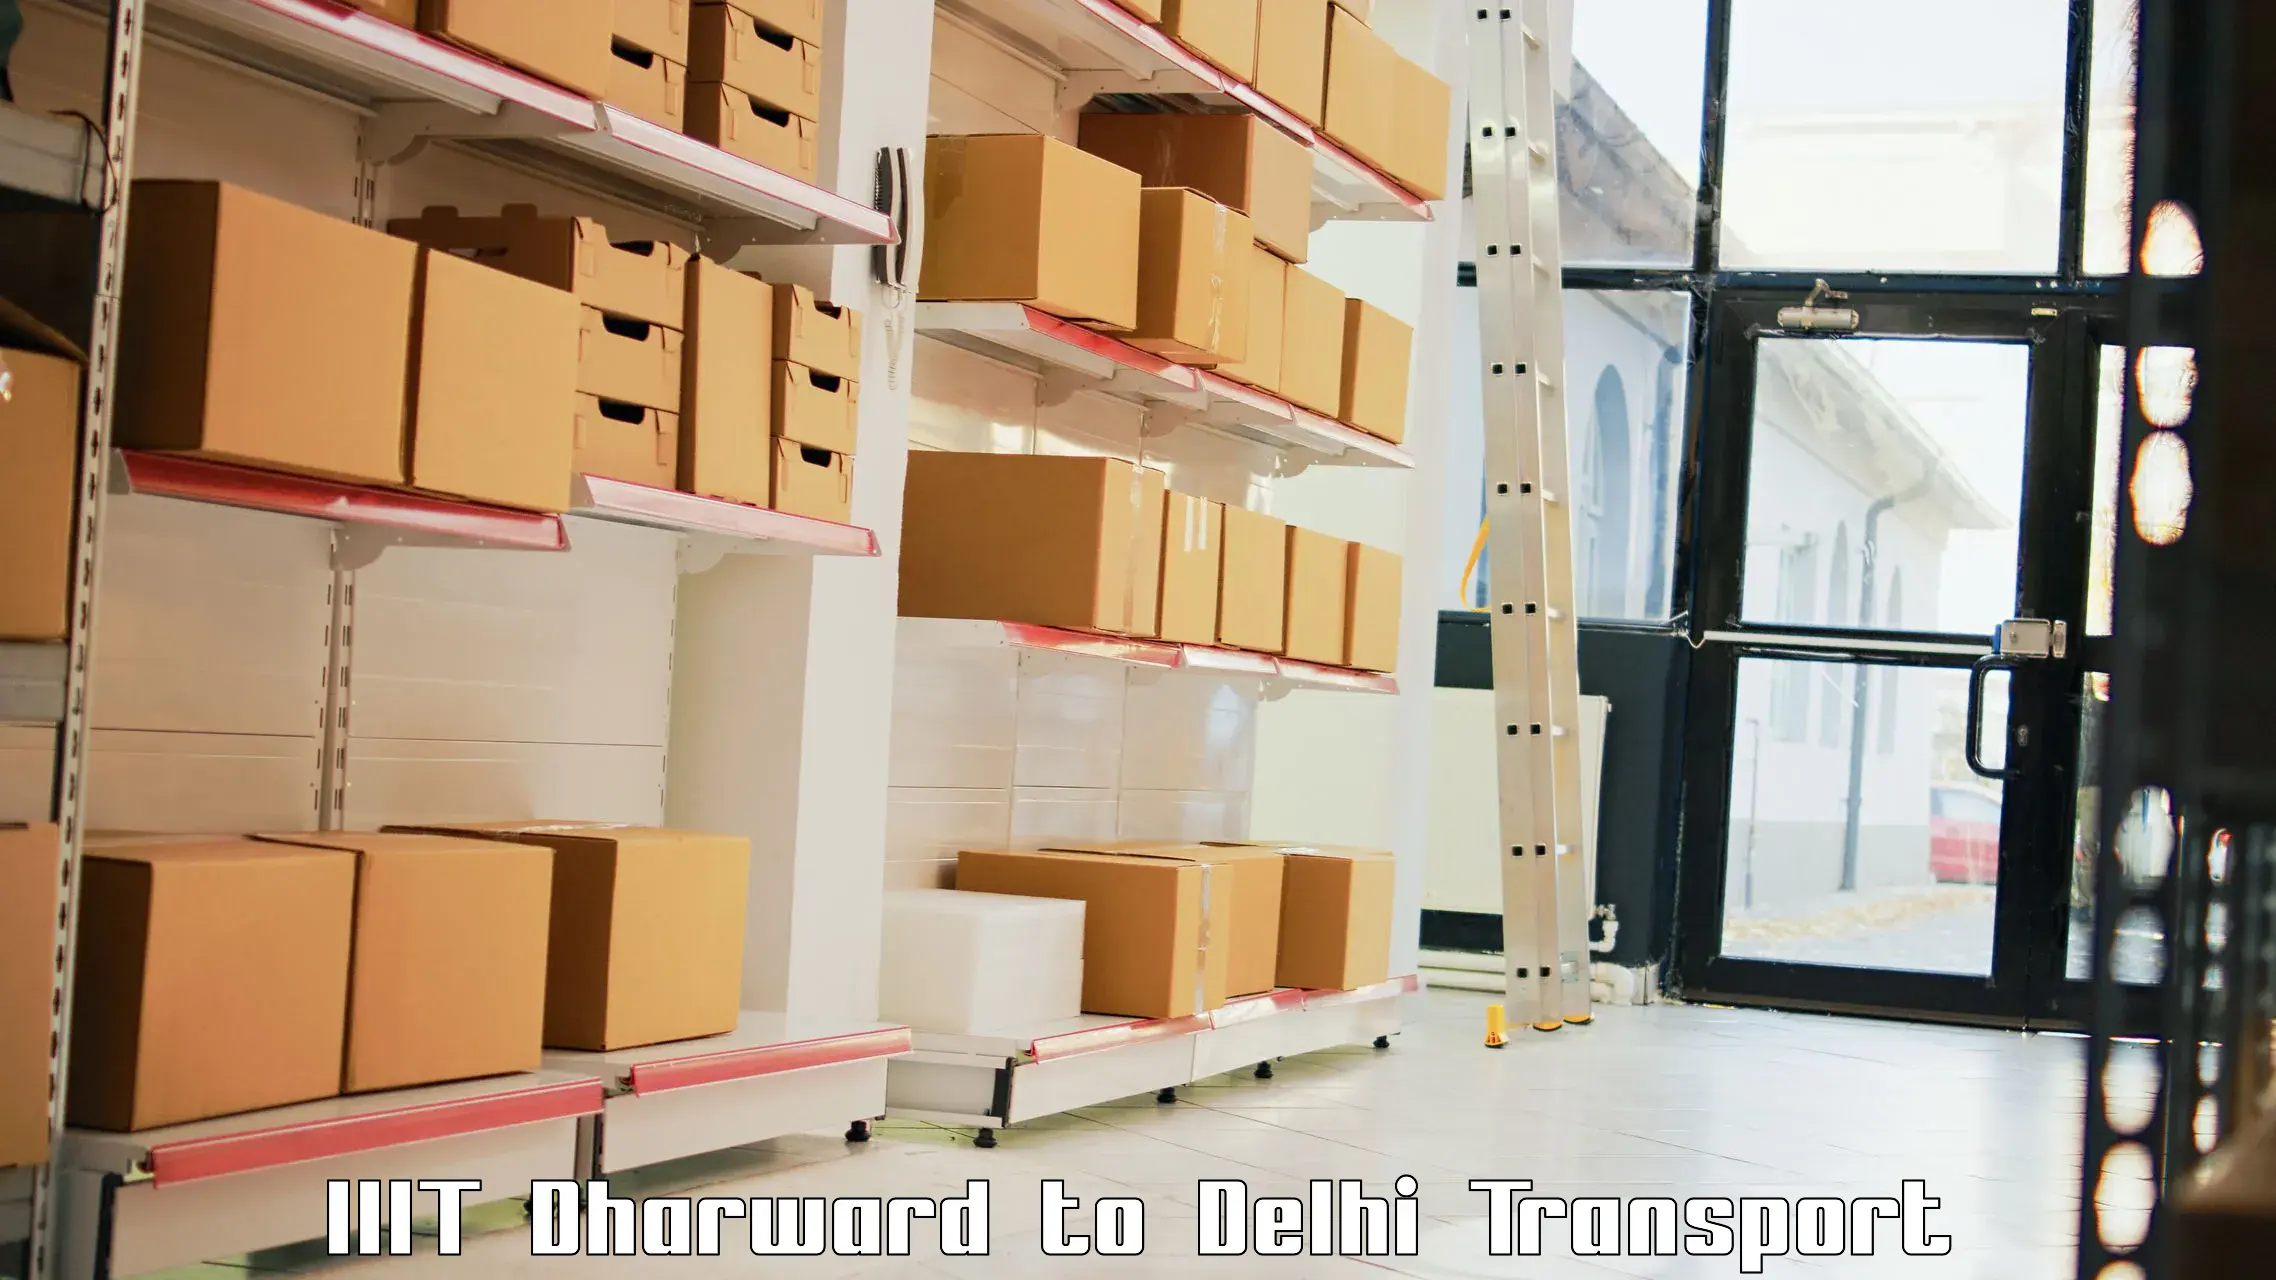 Road transport online services IIIT Dharward to Jamia Hamdard New Delhi